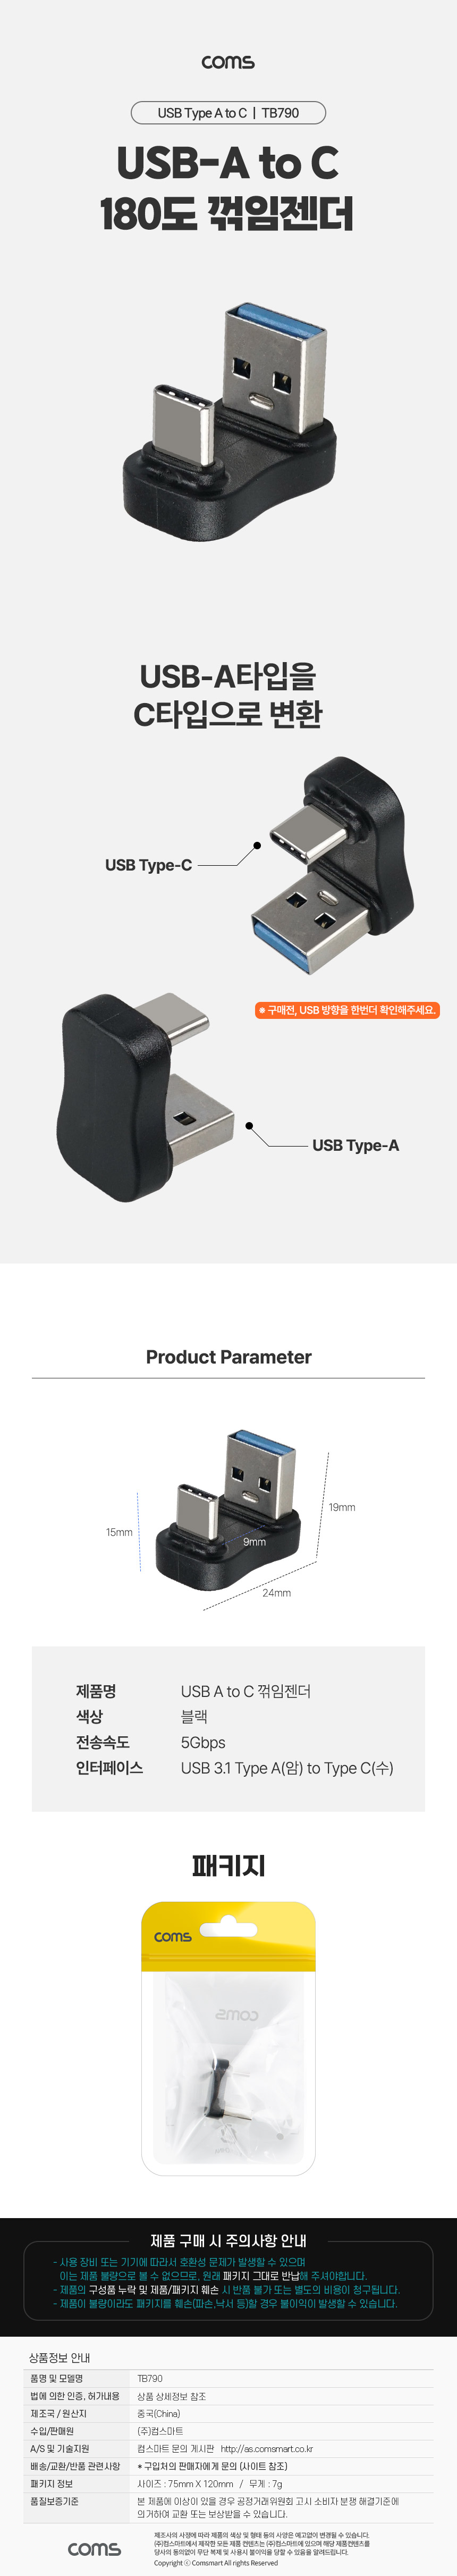 USB 3.1 Type C ȯ CŸ M to USB 3.0 F 5Gbps 180 